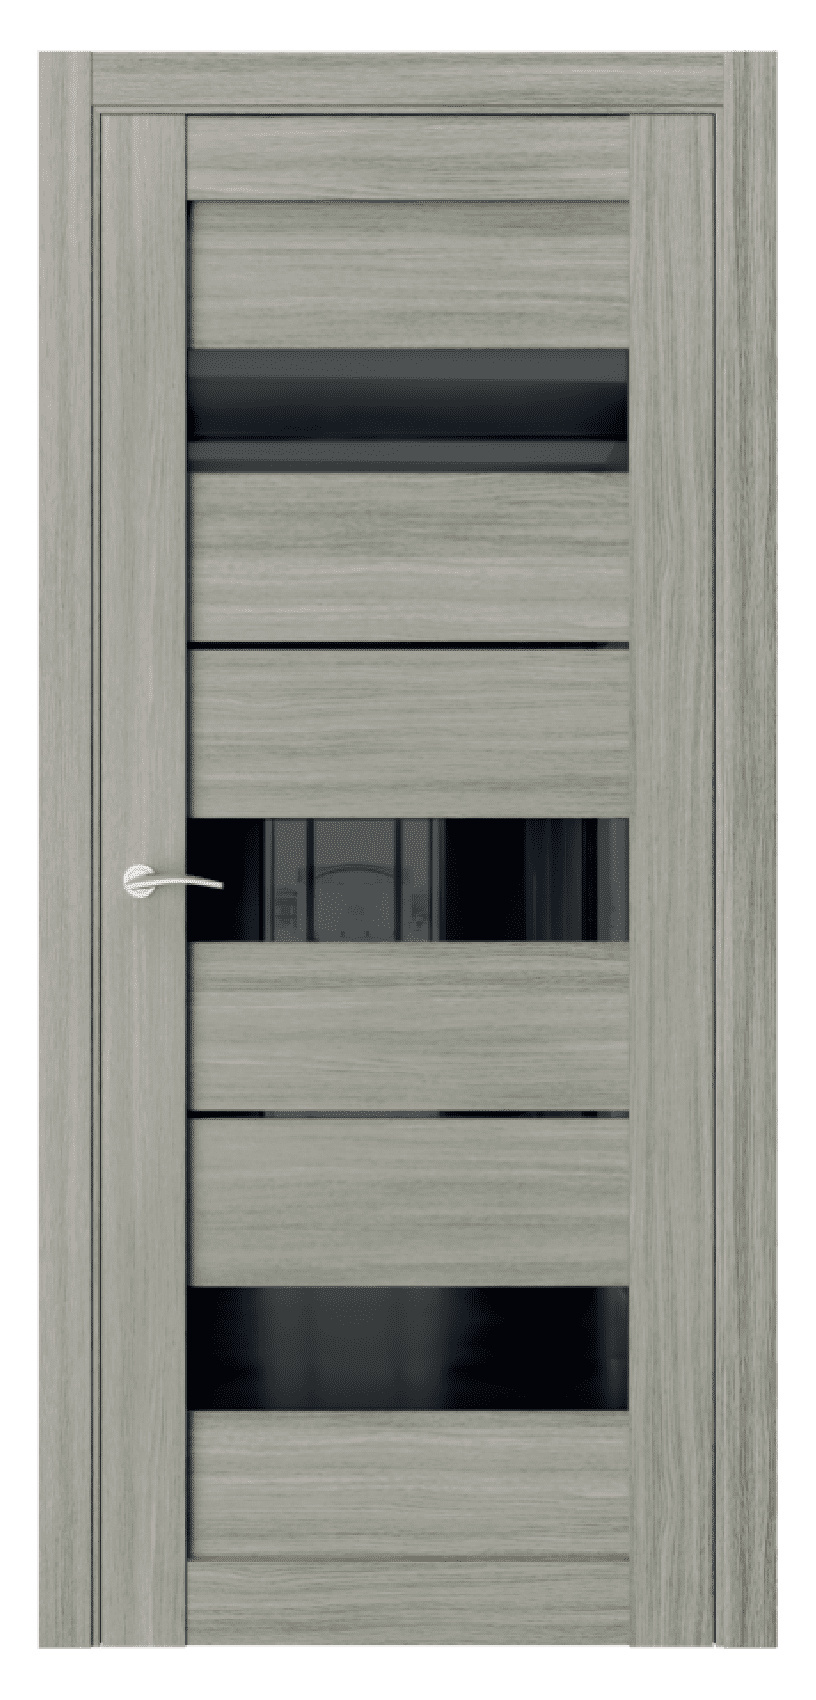 Questdoors Межкомнатная дверь Q15, арт. 17466 - фото №1